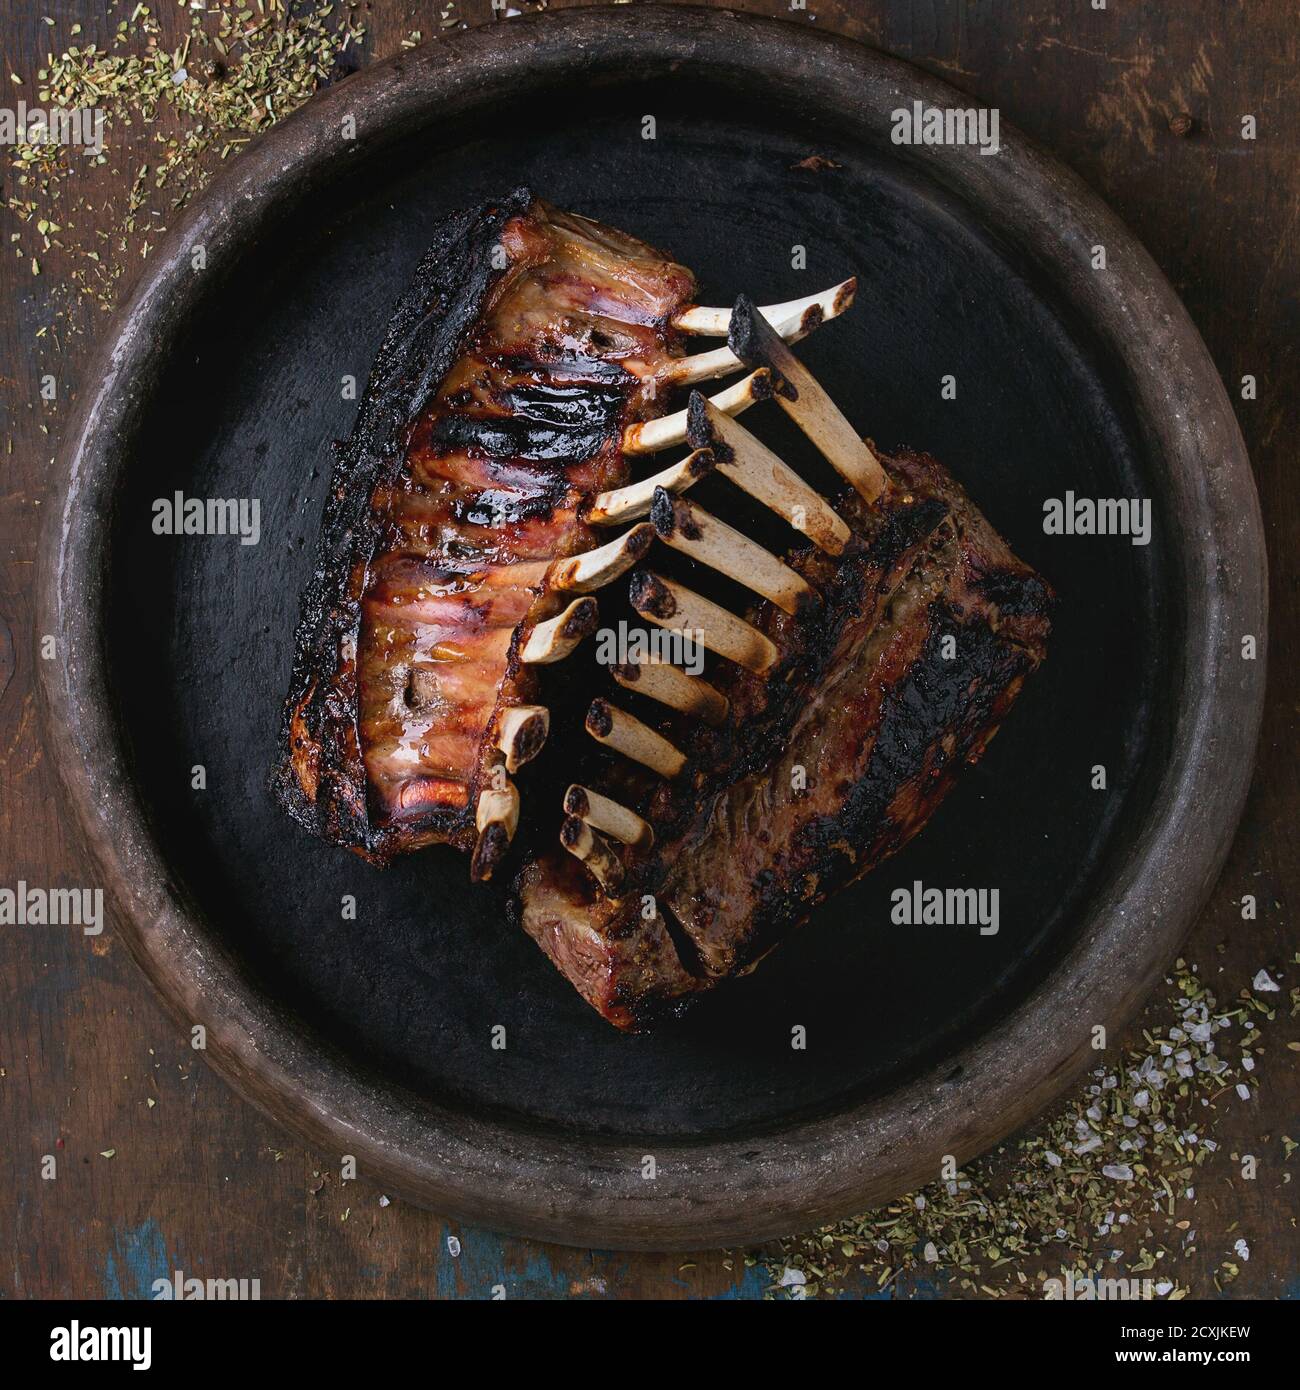 Rack barbecue intero di agnello, servito con condimento su vassoio di argilla su vecchio sfondo di legno. Vista dall'alto. Immagine quadrata Foto Stock